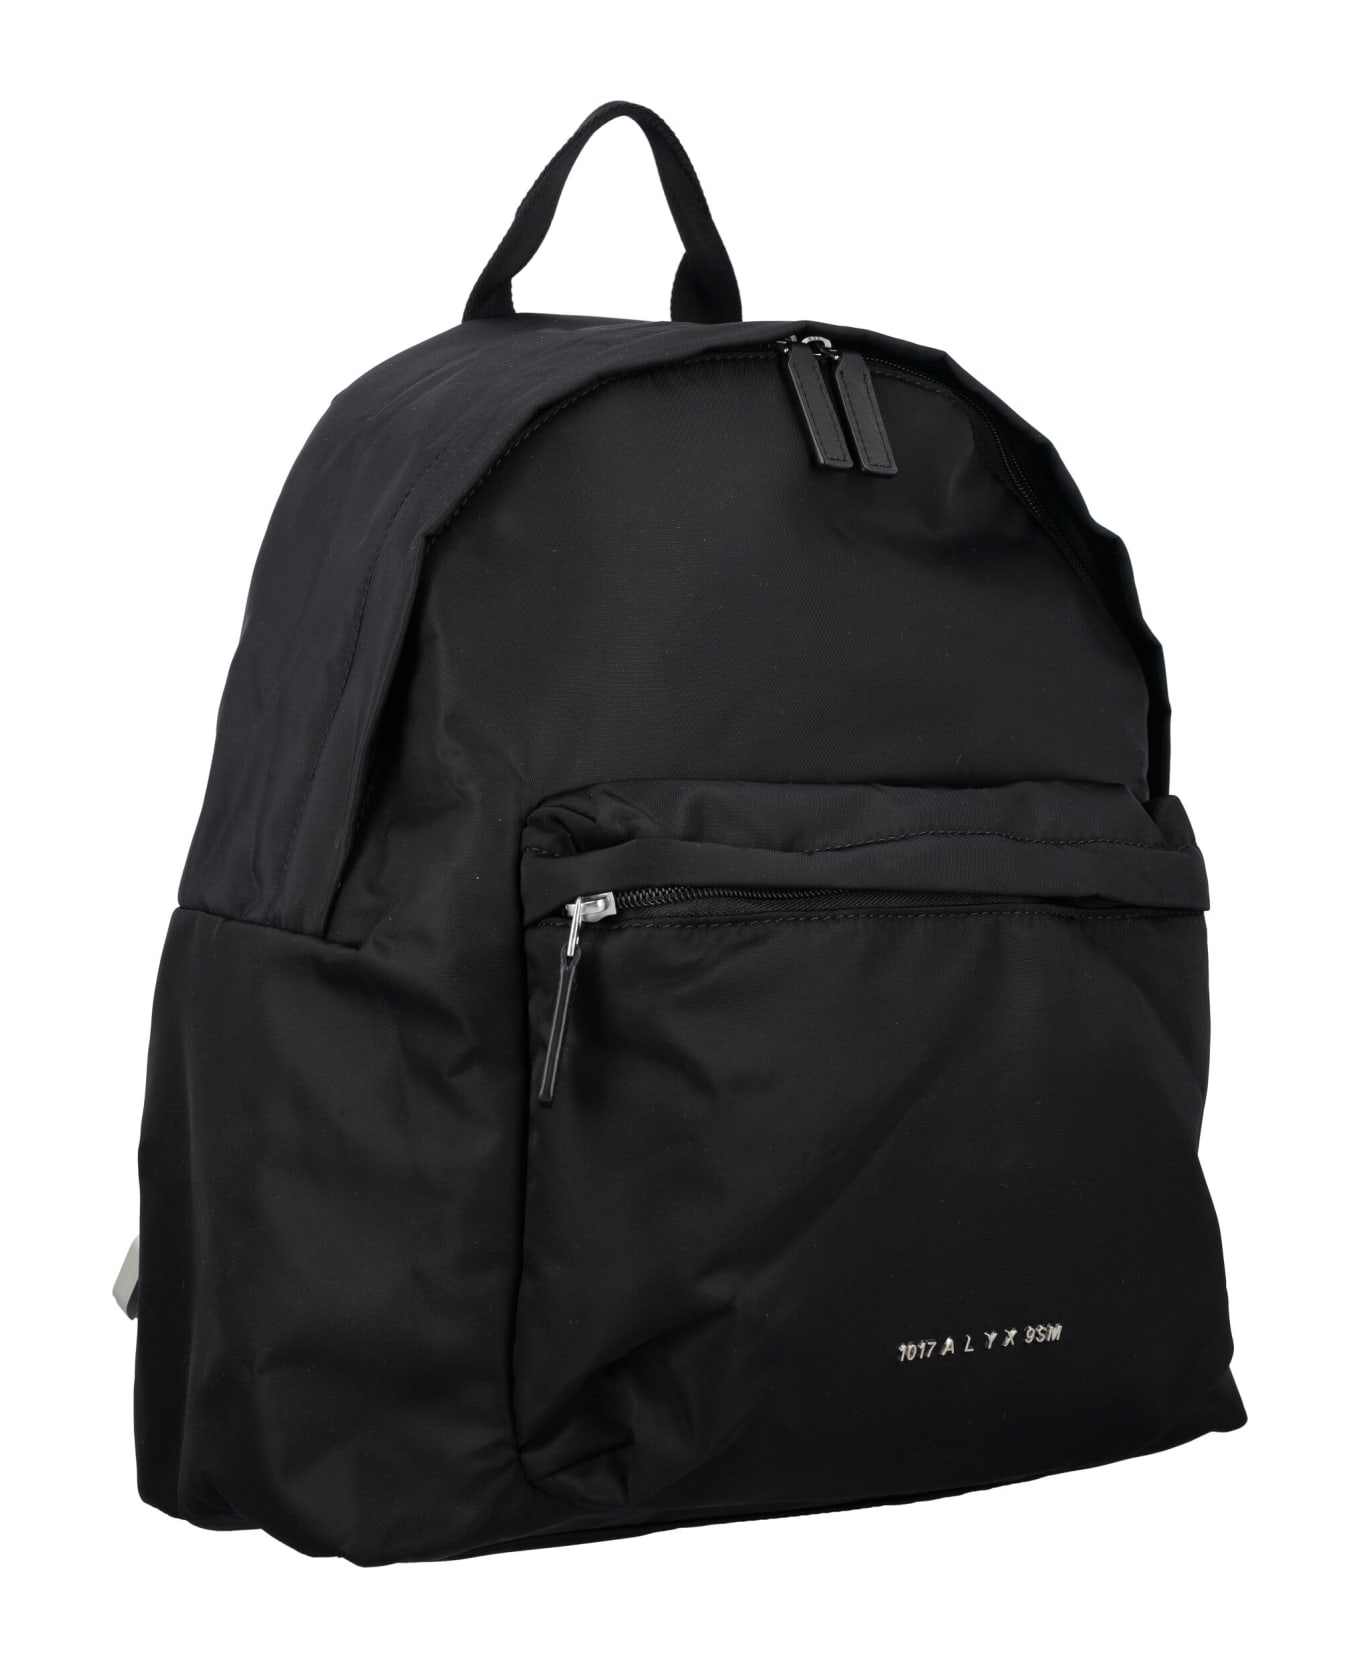 1017 ALYX 9SM Buckle Shoulder Straps Backpack - BLACK